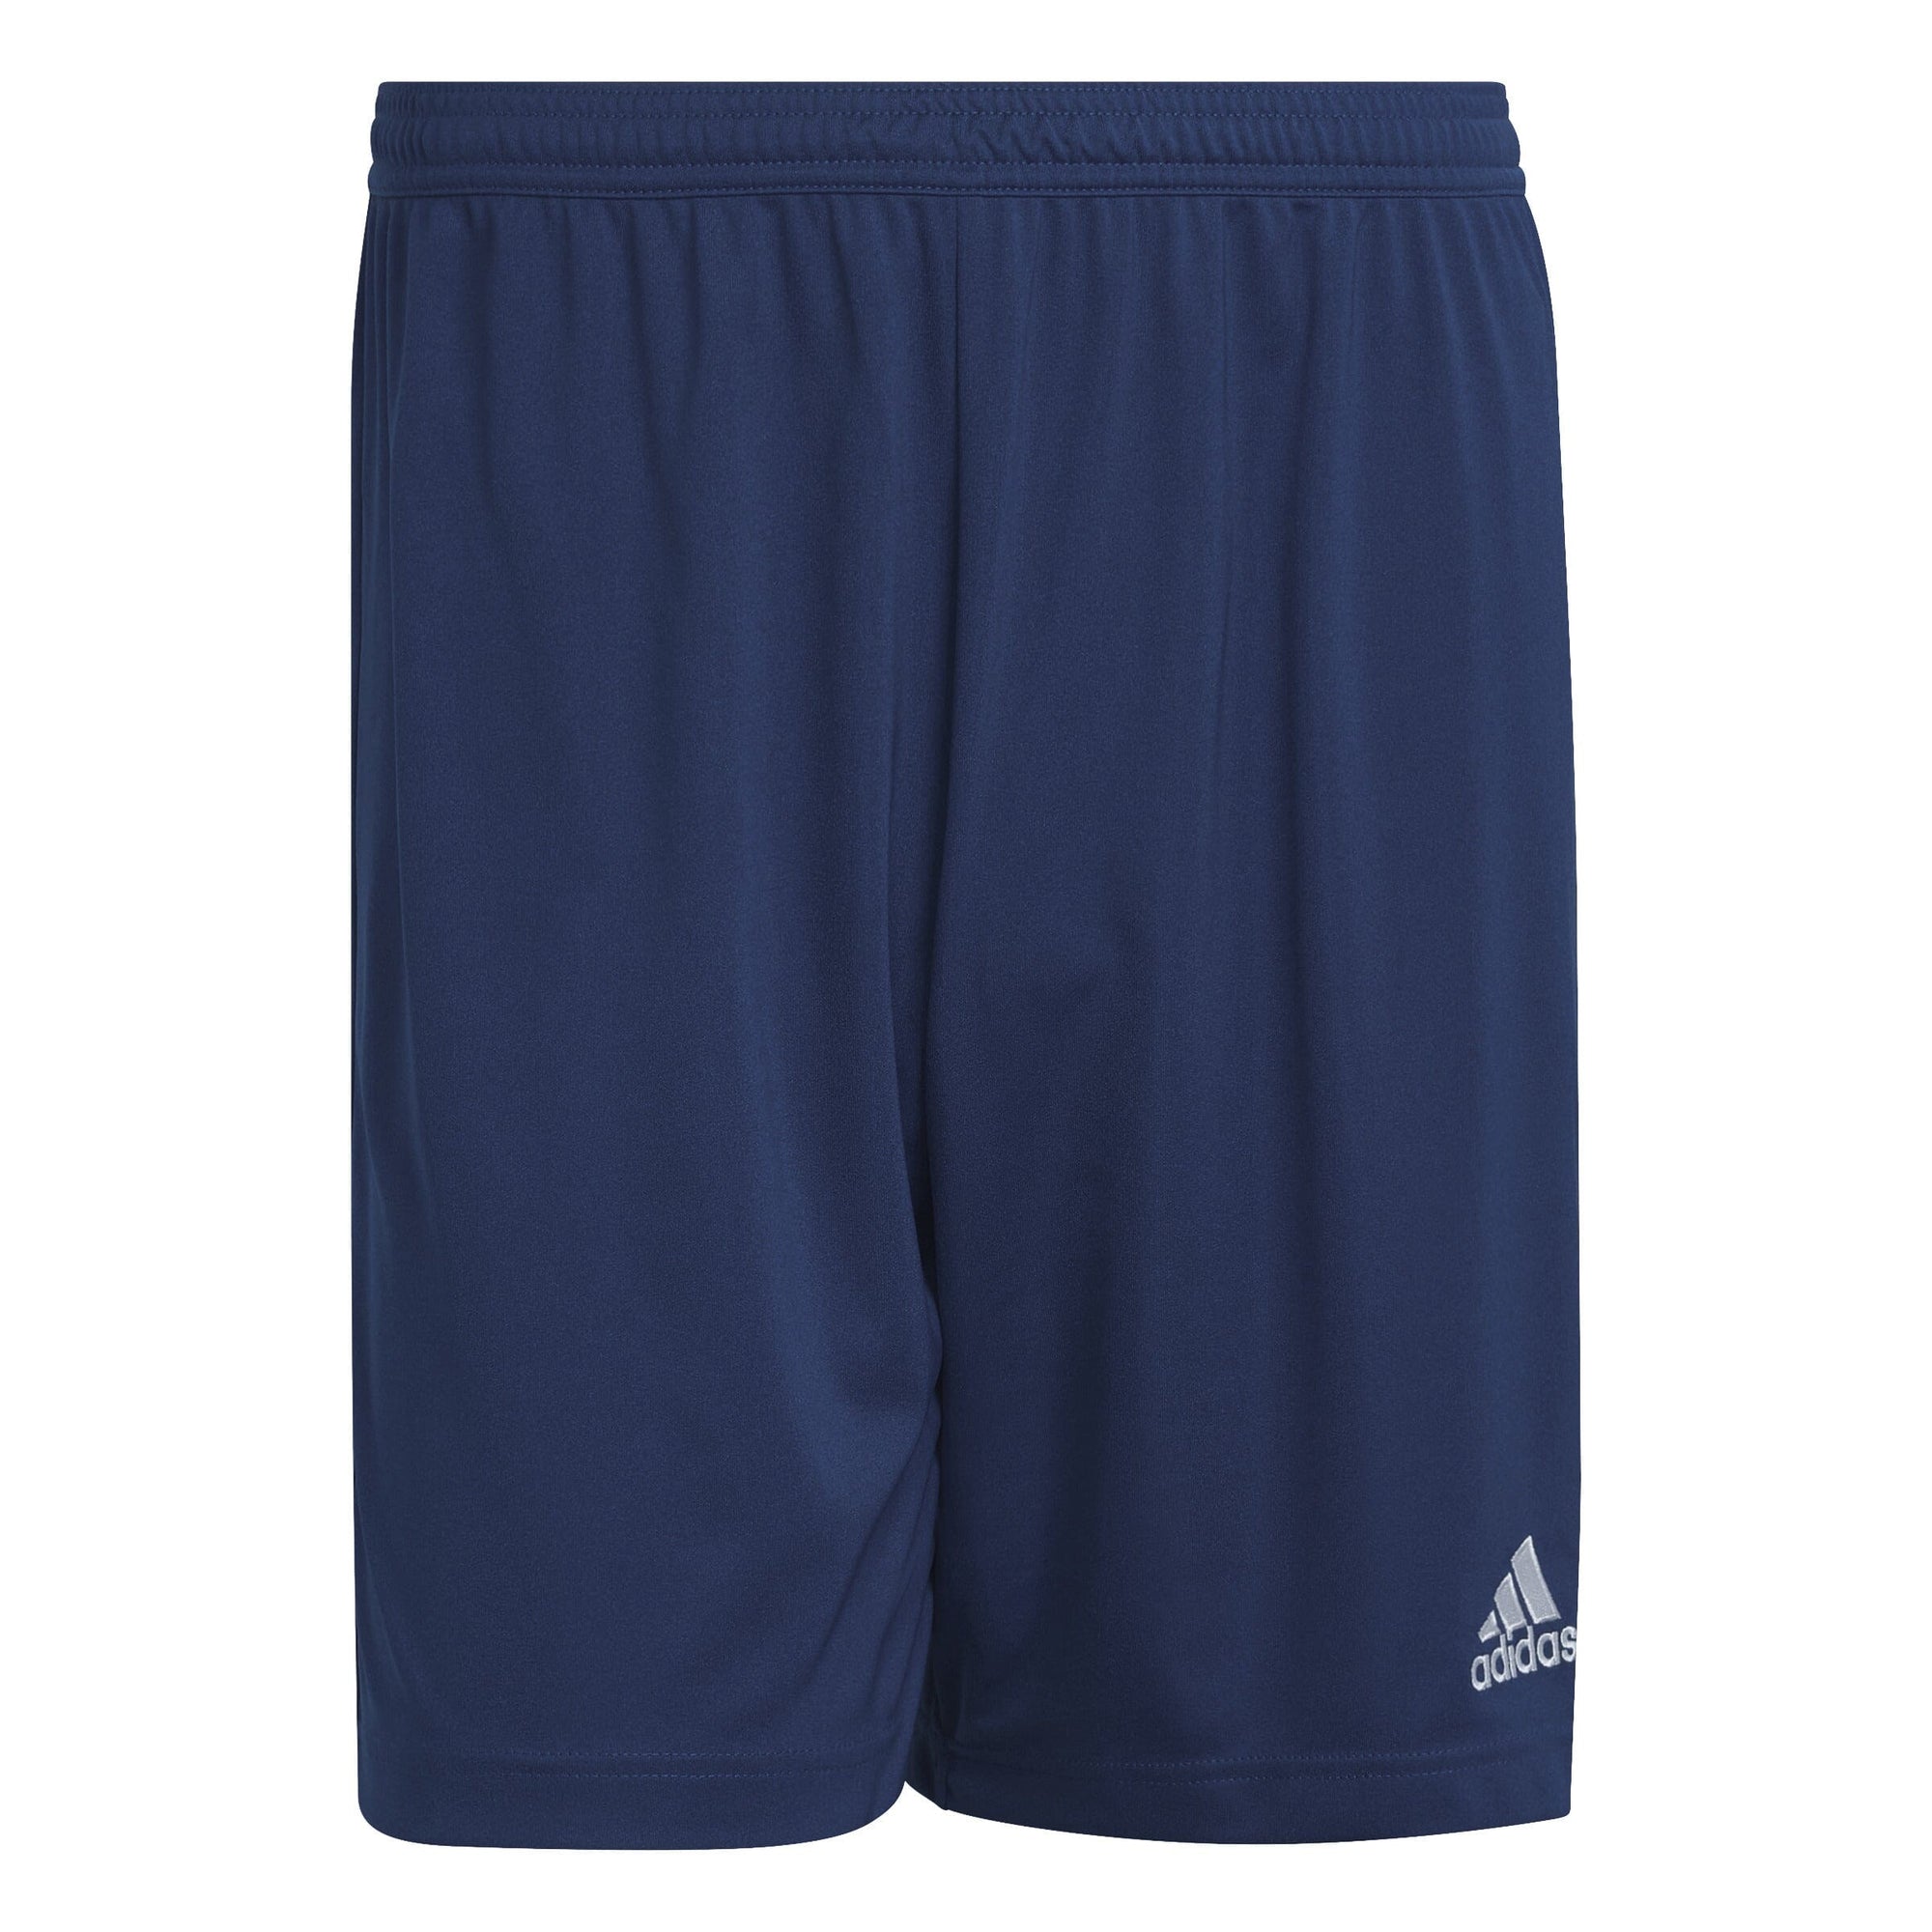 adidas Men's Entrada 22 Shorts Shorts Adidas Adult Small Navy 